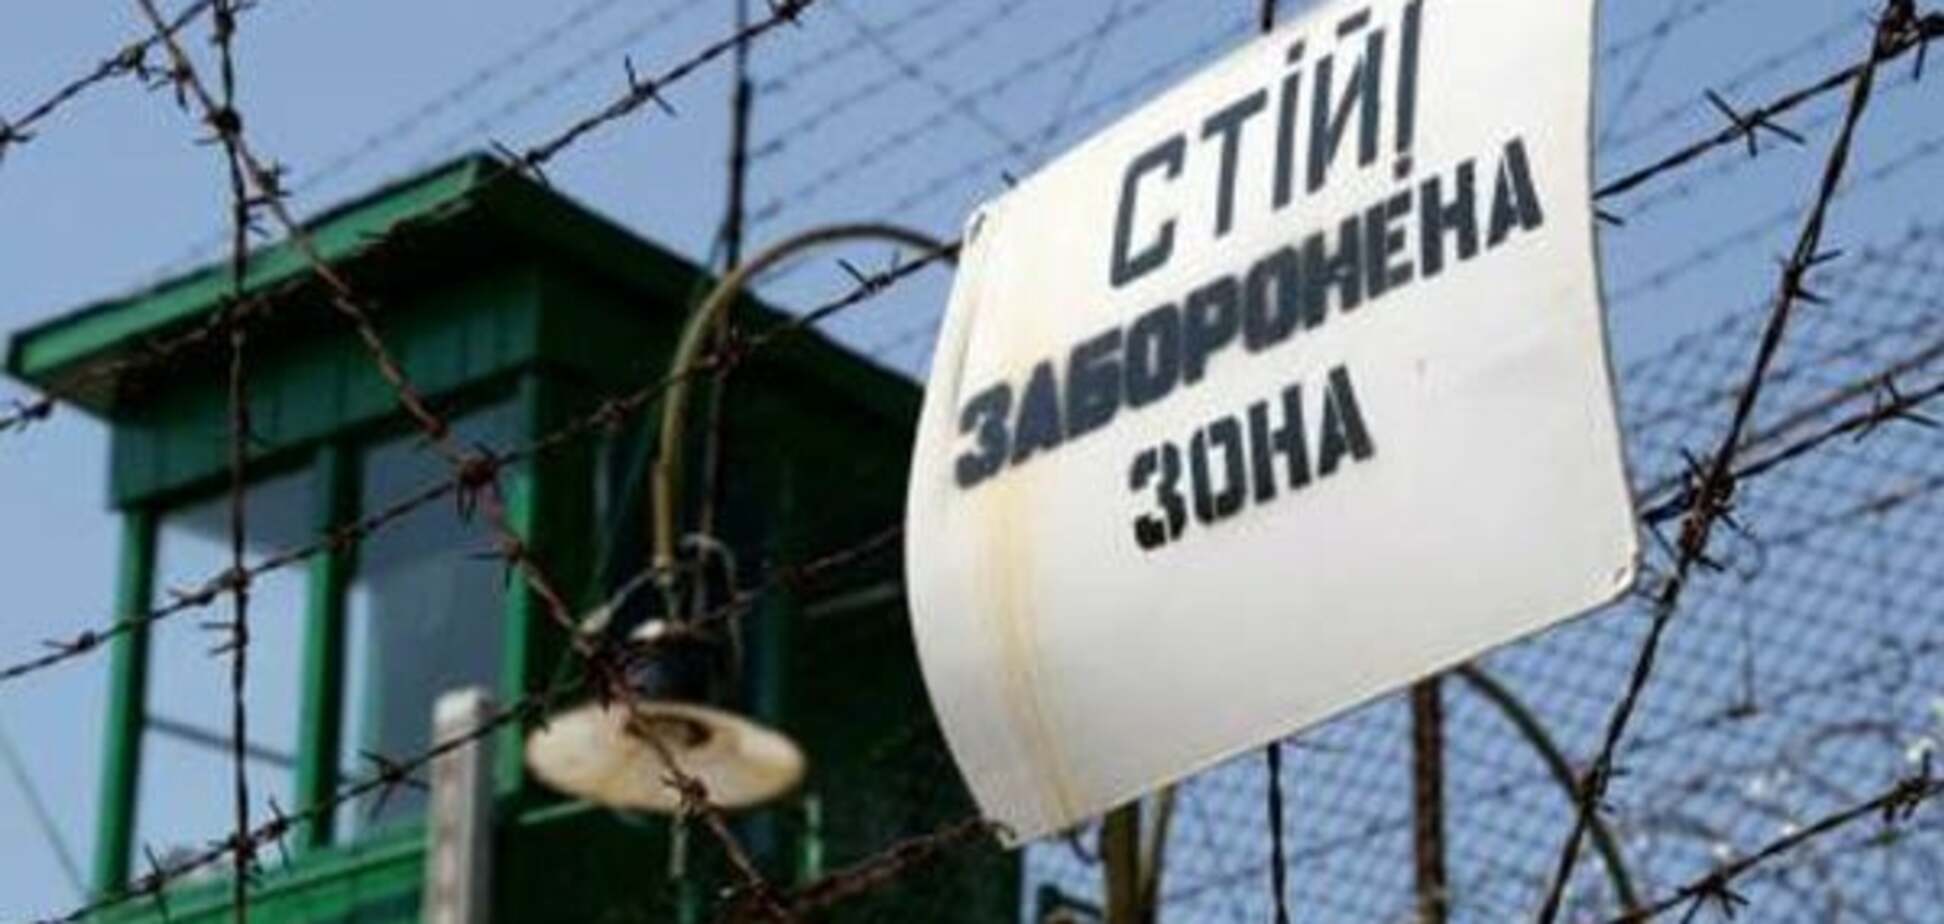 'Закон Савченко' выпустит на свободу тысячи уголовников - ГПУ